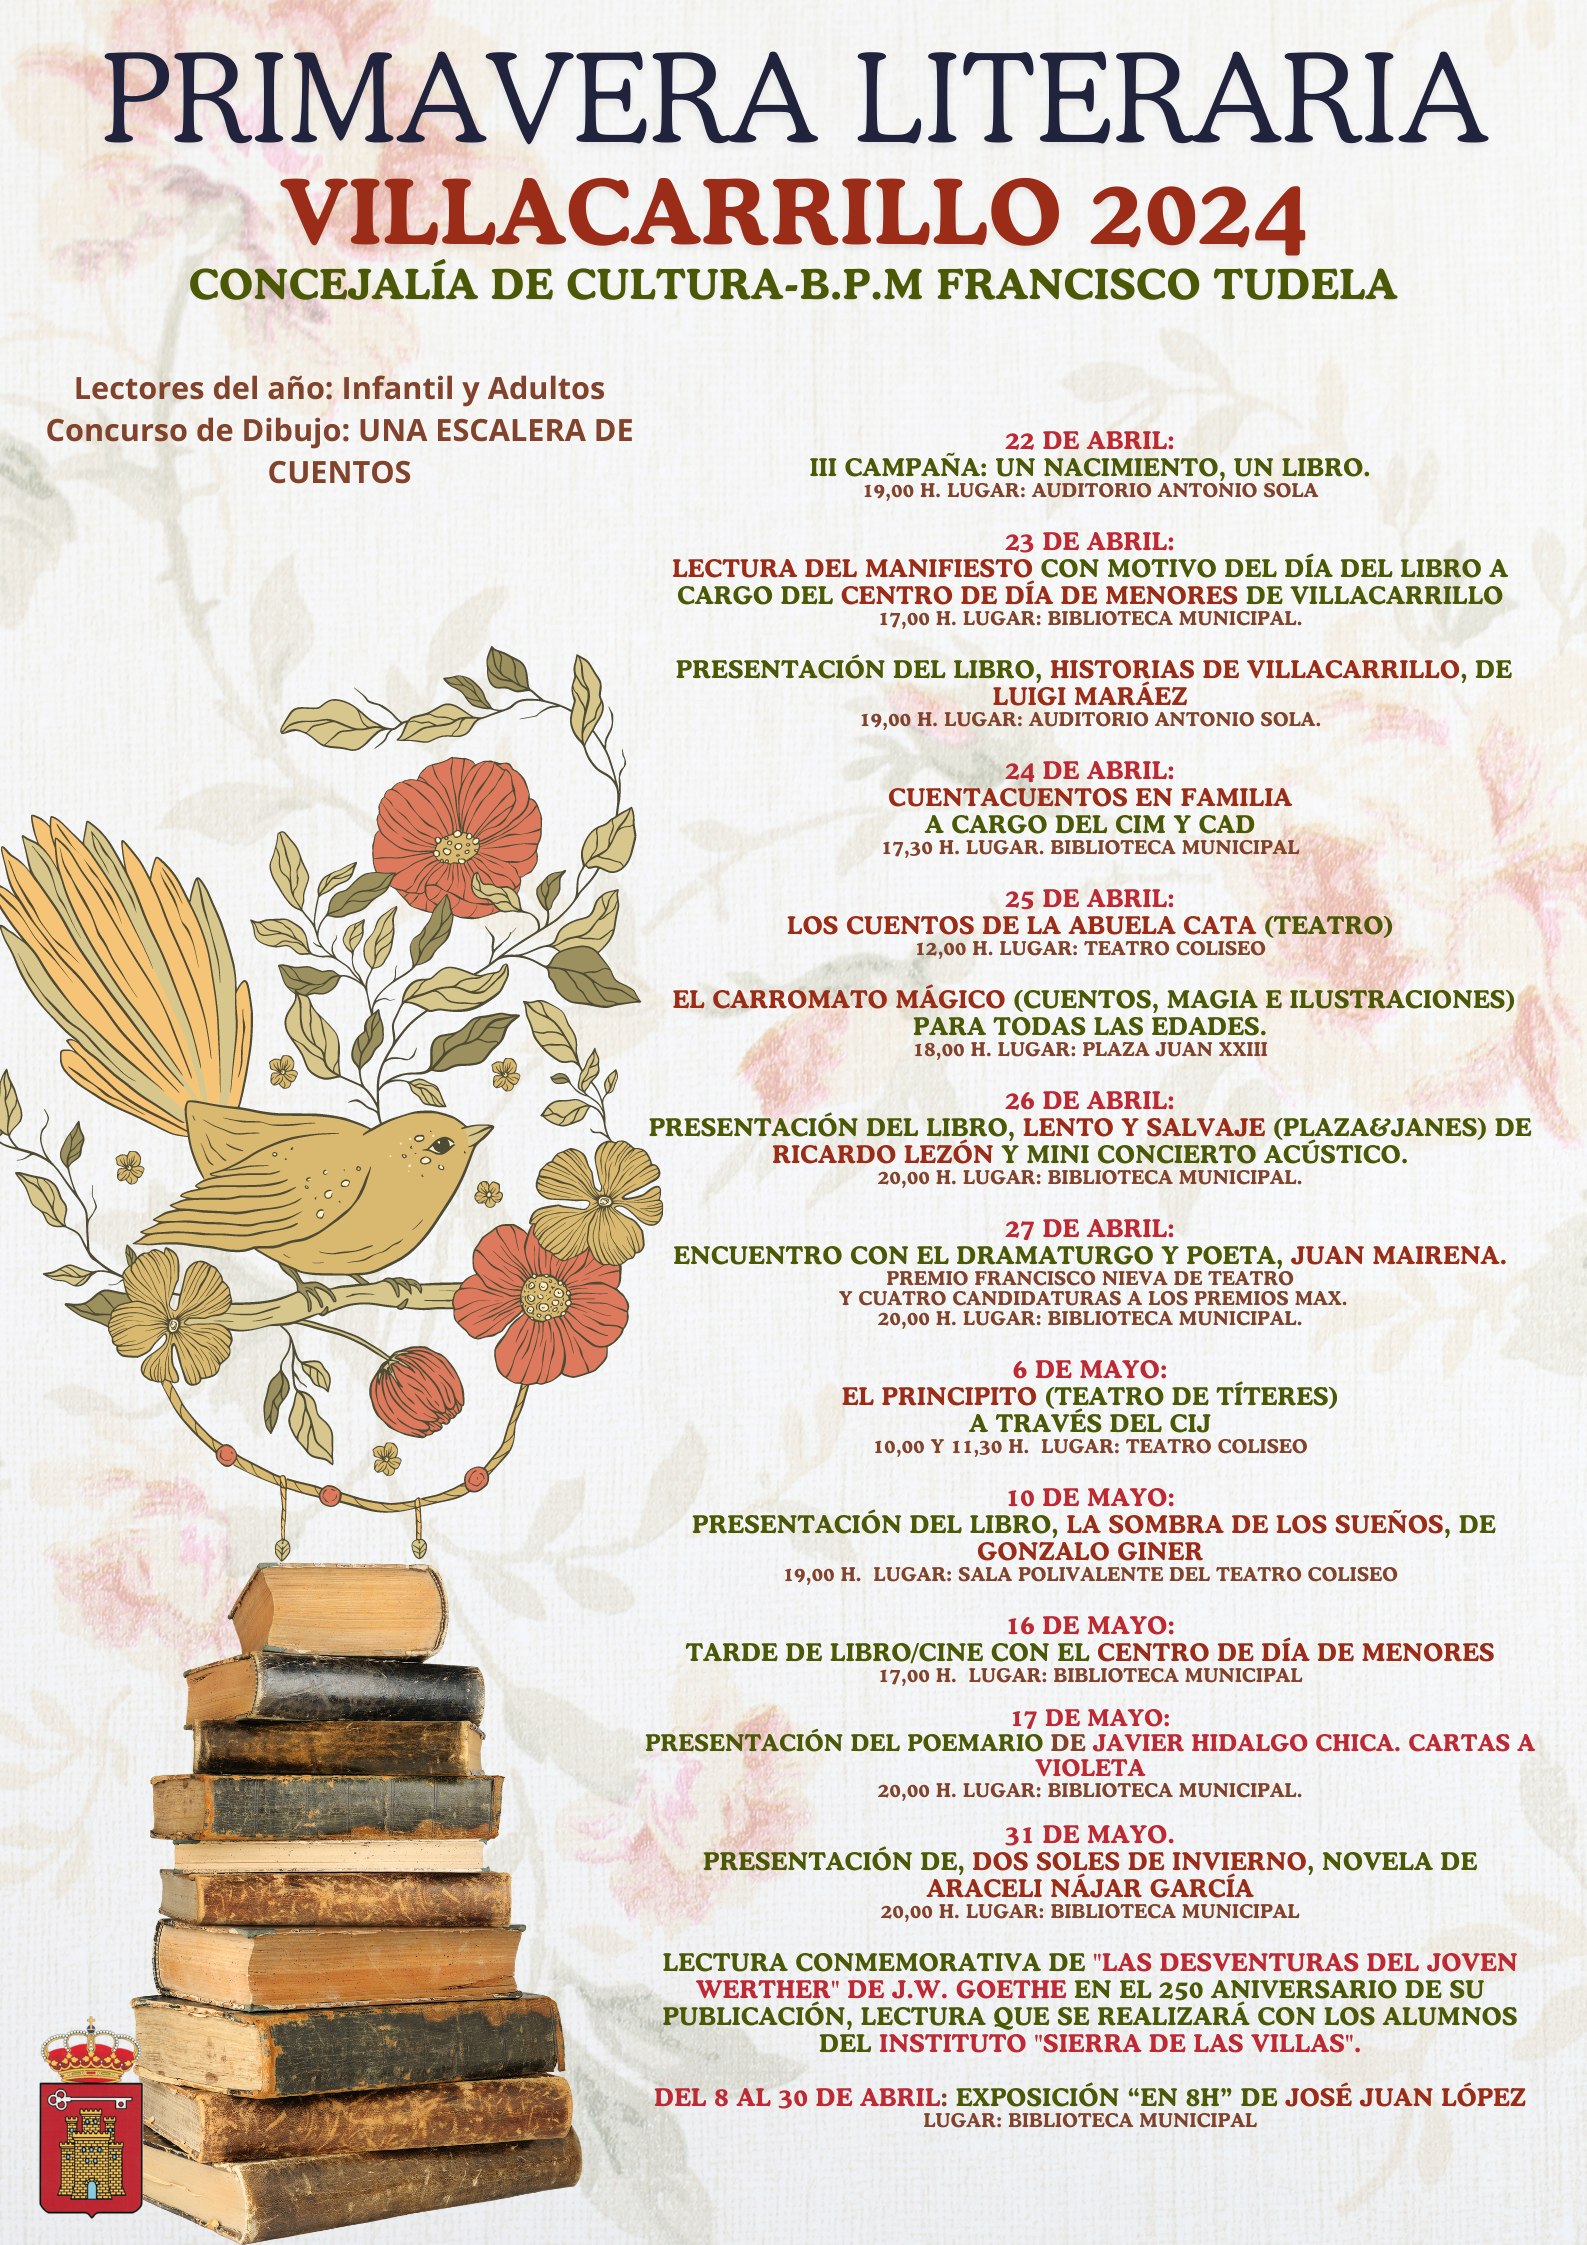 Presentamos una INMENSA Primavera Literaria en Villacarrillo